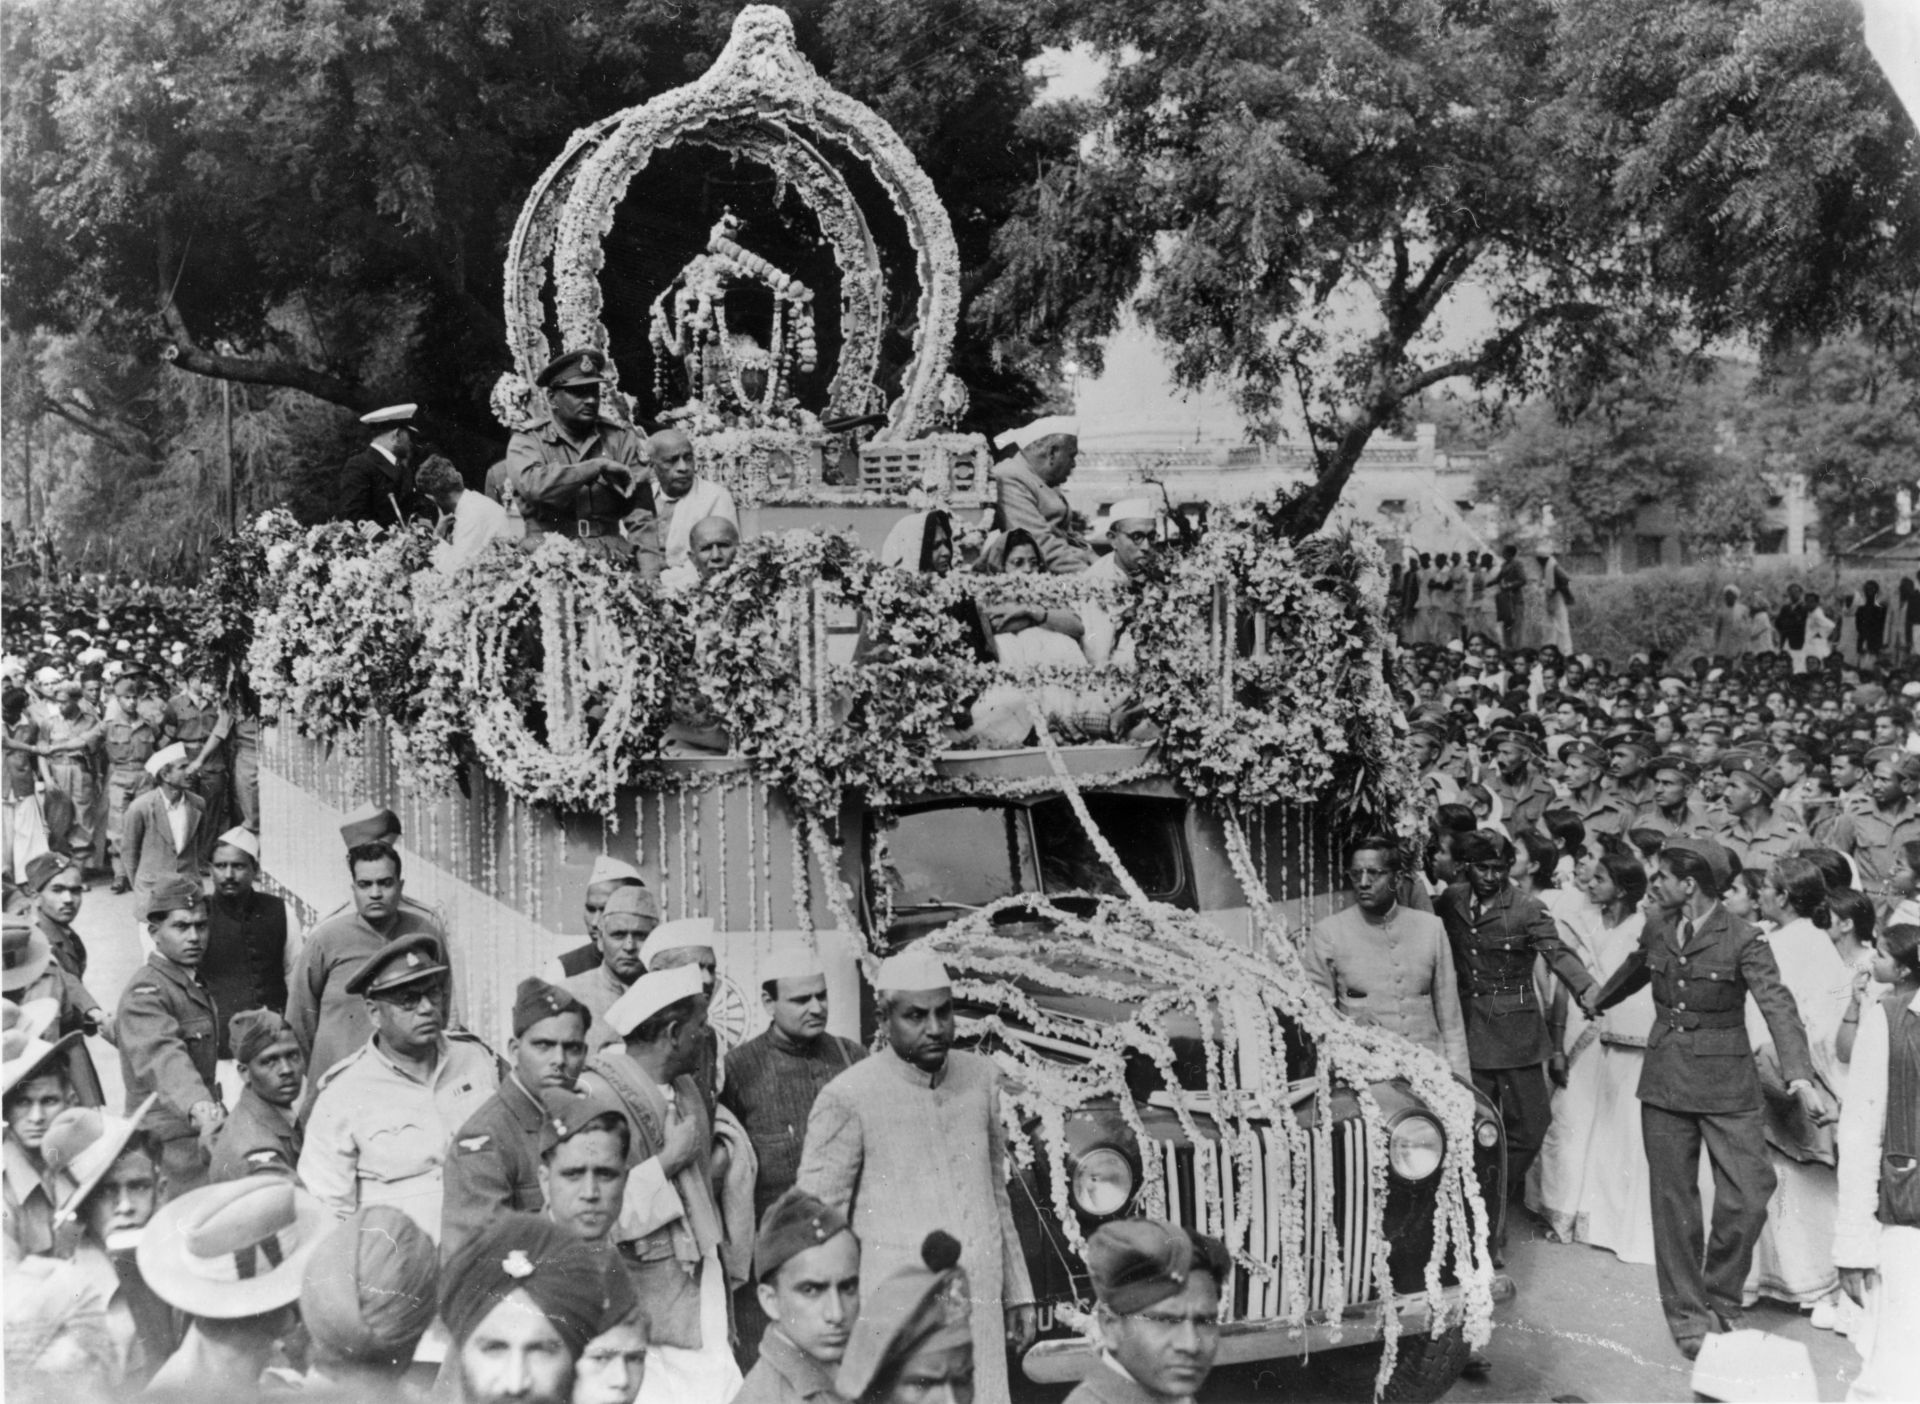  17 февруари 1948 година: Пепелта на убития индийски националистически водач Махатма Ганди (1869 - 1948) се придвижва по улиците на Аллахабад, преди да бъде изпратен до река Ганг 